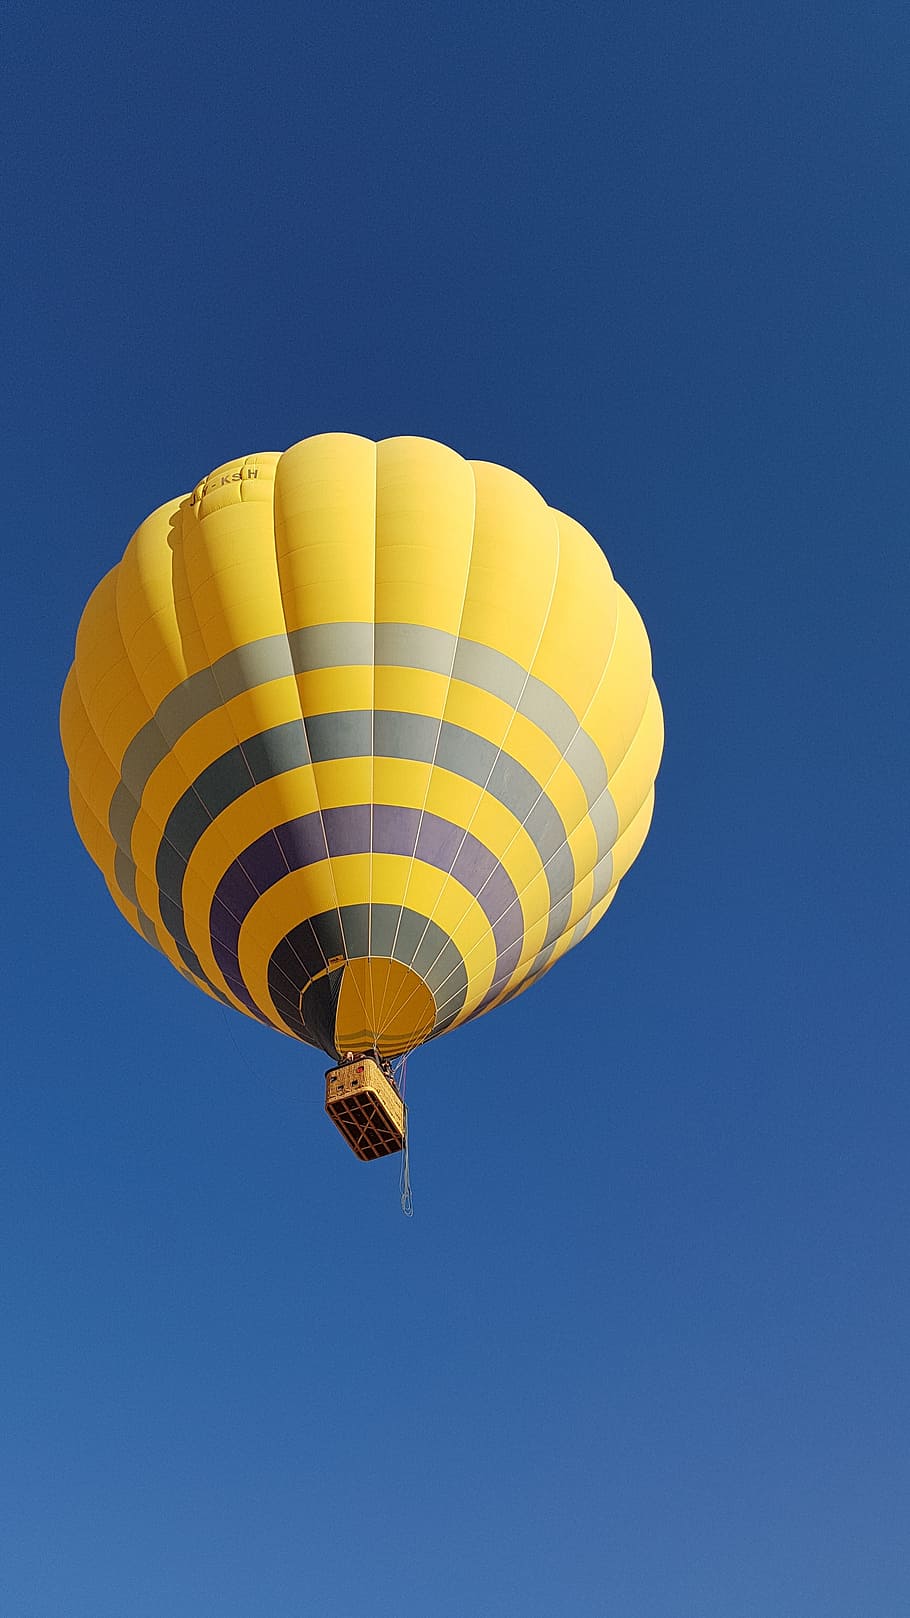 気球, 空気, 空, パラシュート, 熱気球, アドベンチャー, 飛行, エクストリームスポーツ, 低角度のビュー, 空中